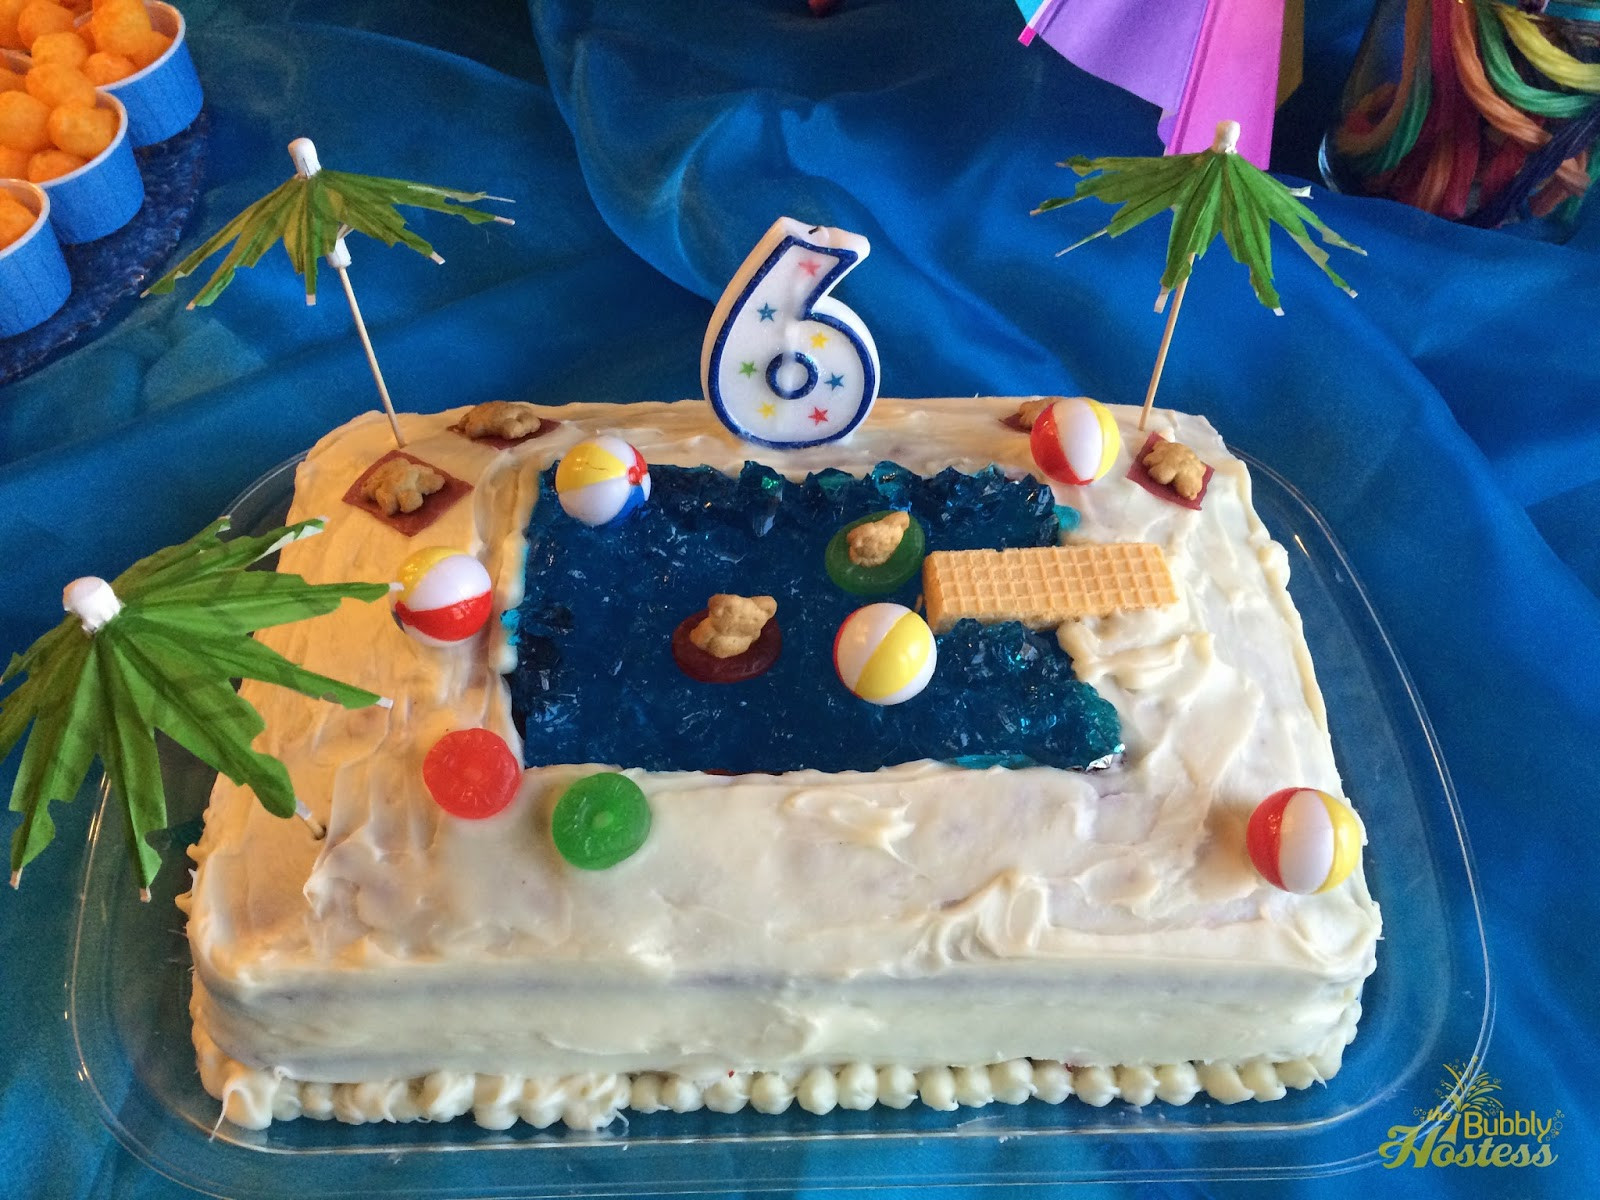 Pool Party Birthday Cakes Ideas
 The Bubbly Hostess Birthday Pool Party